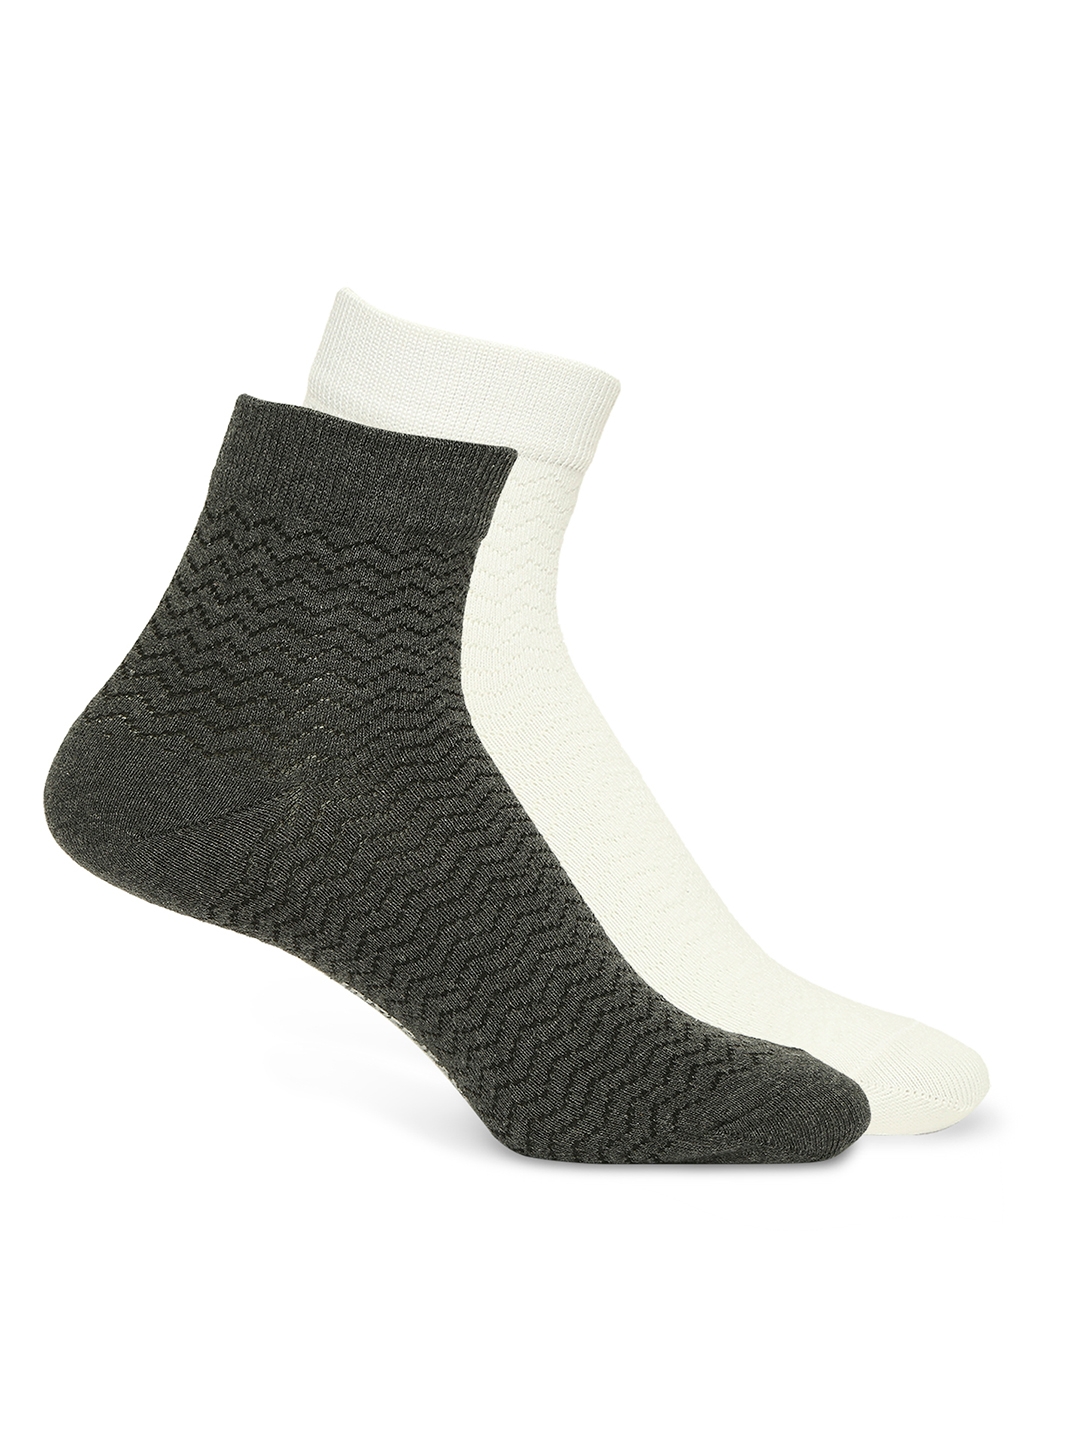 spykar | Underjeans by Spykar Premium White & Anthra Melange Ankle Length Socks - Pack Of 2